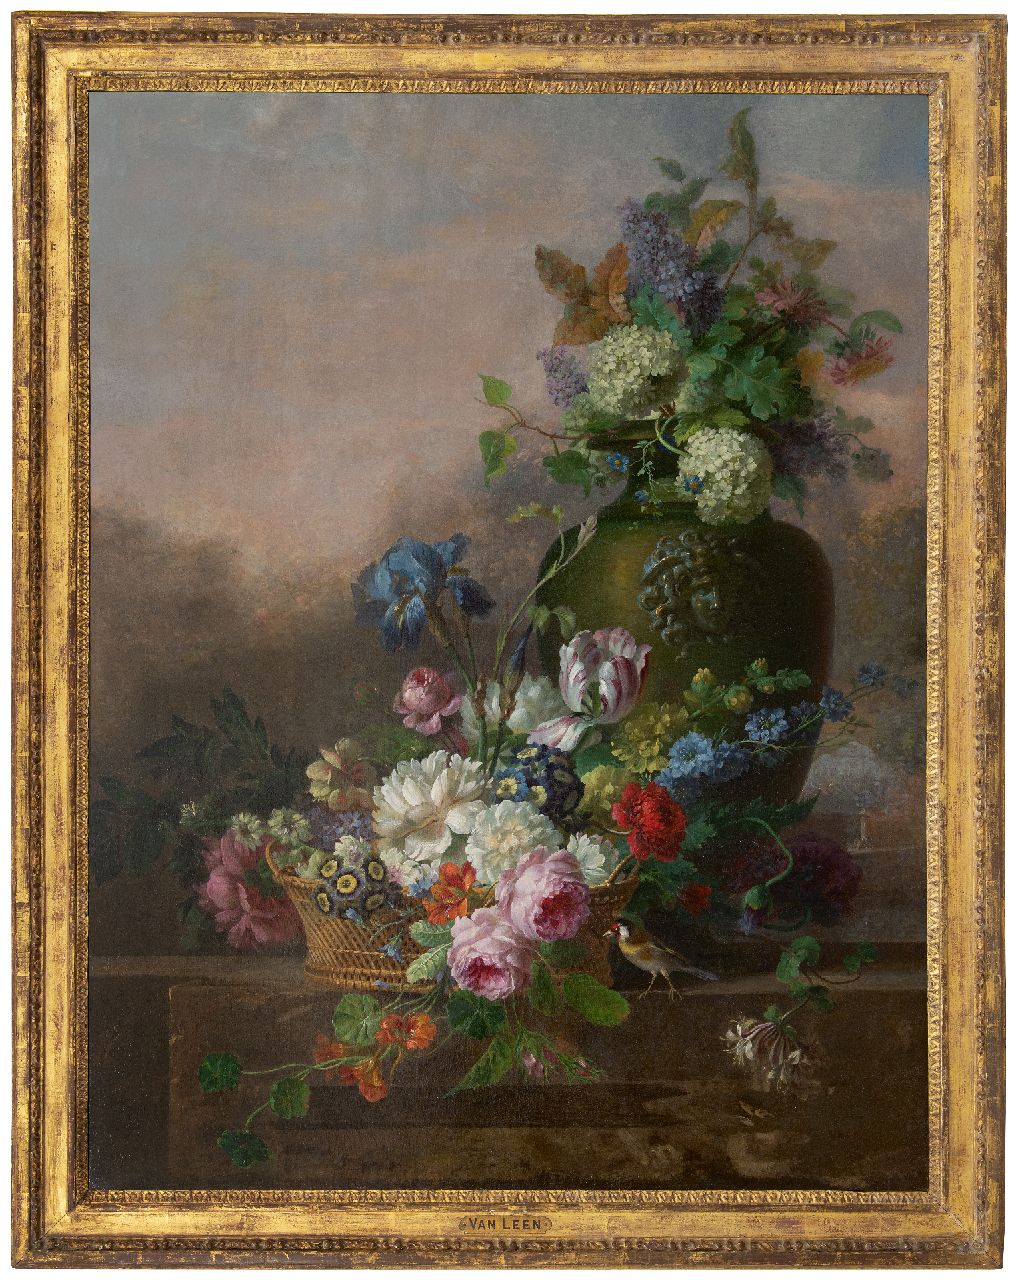 Leen W. van | Willem van Leen, Blumenstilleben mit Rosen, Tulpe, einer Iris und anderen Blumen, Öl auf Leinwand 116,2 x 90,8 cm, Unterzeichnet vage unterzeichnet